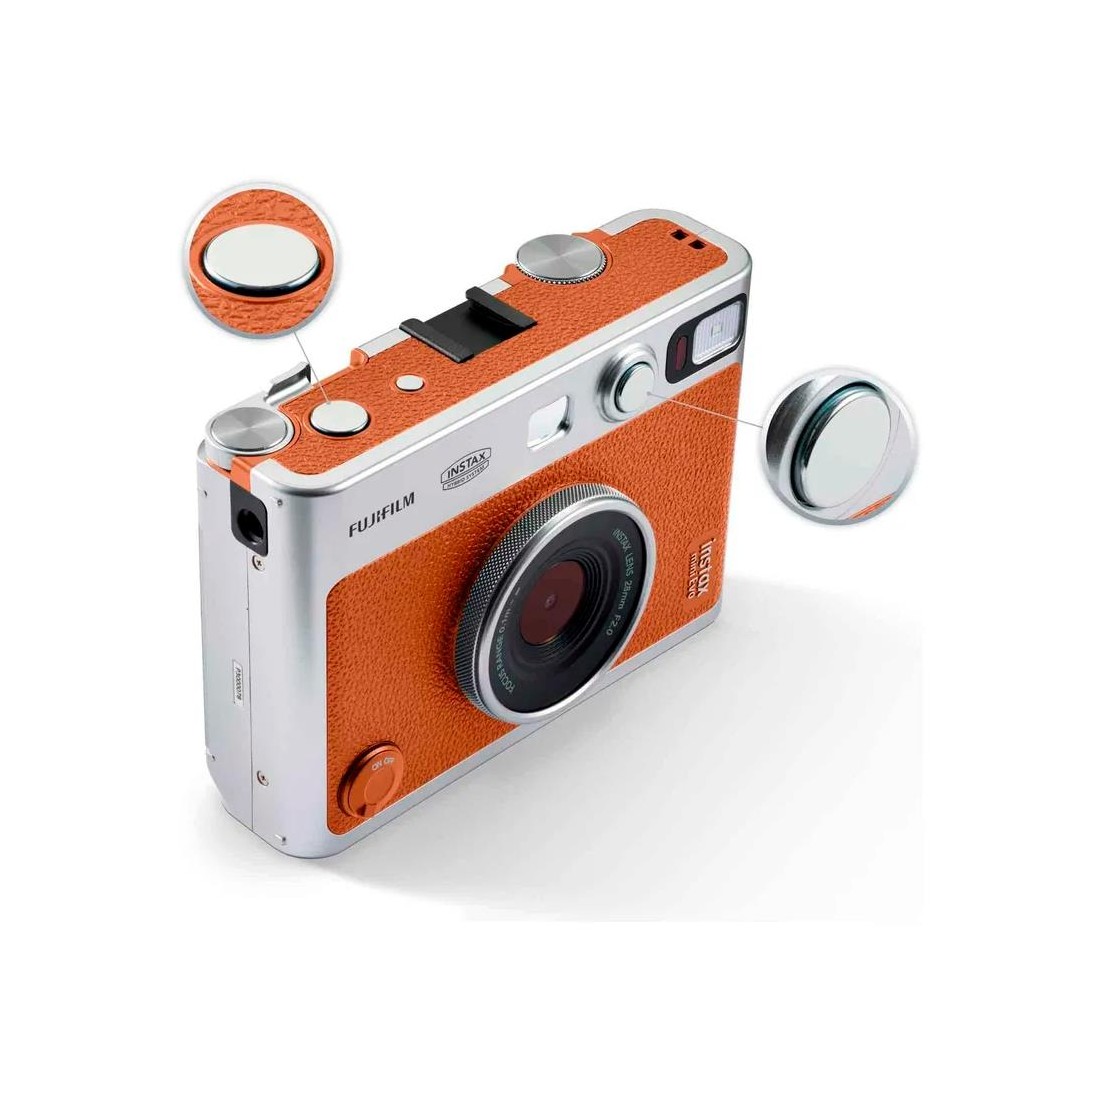 Fujifilm Instax mini 40, características, precio y ficha técnica